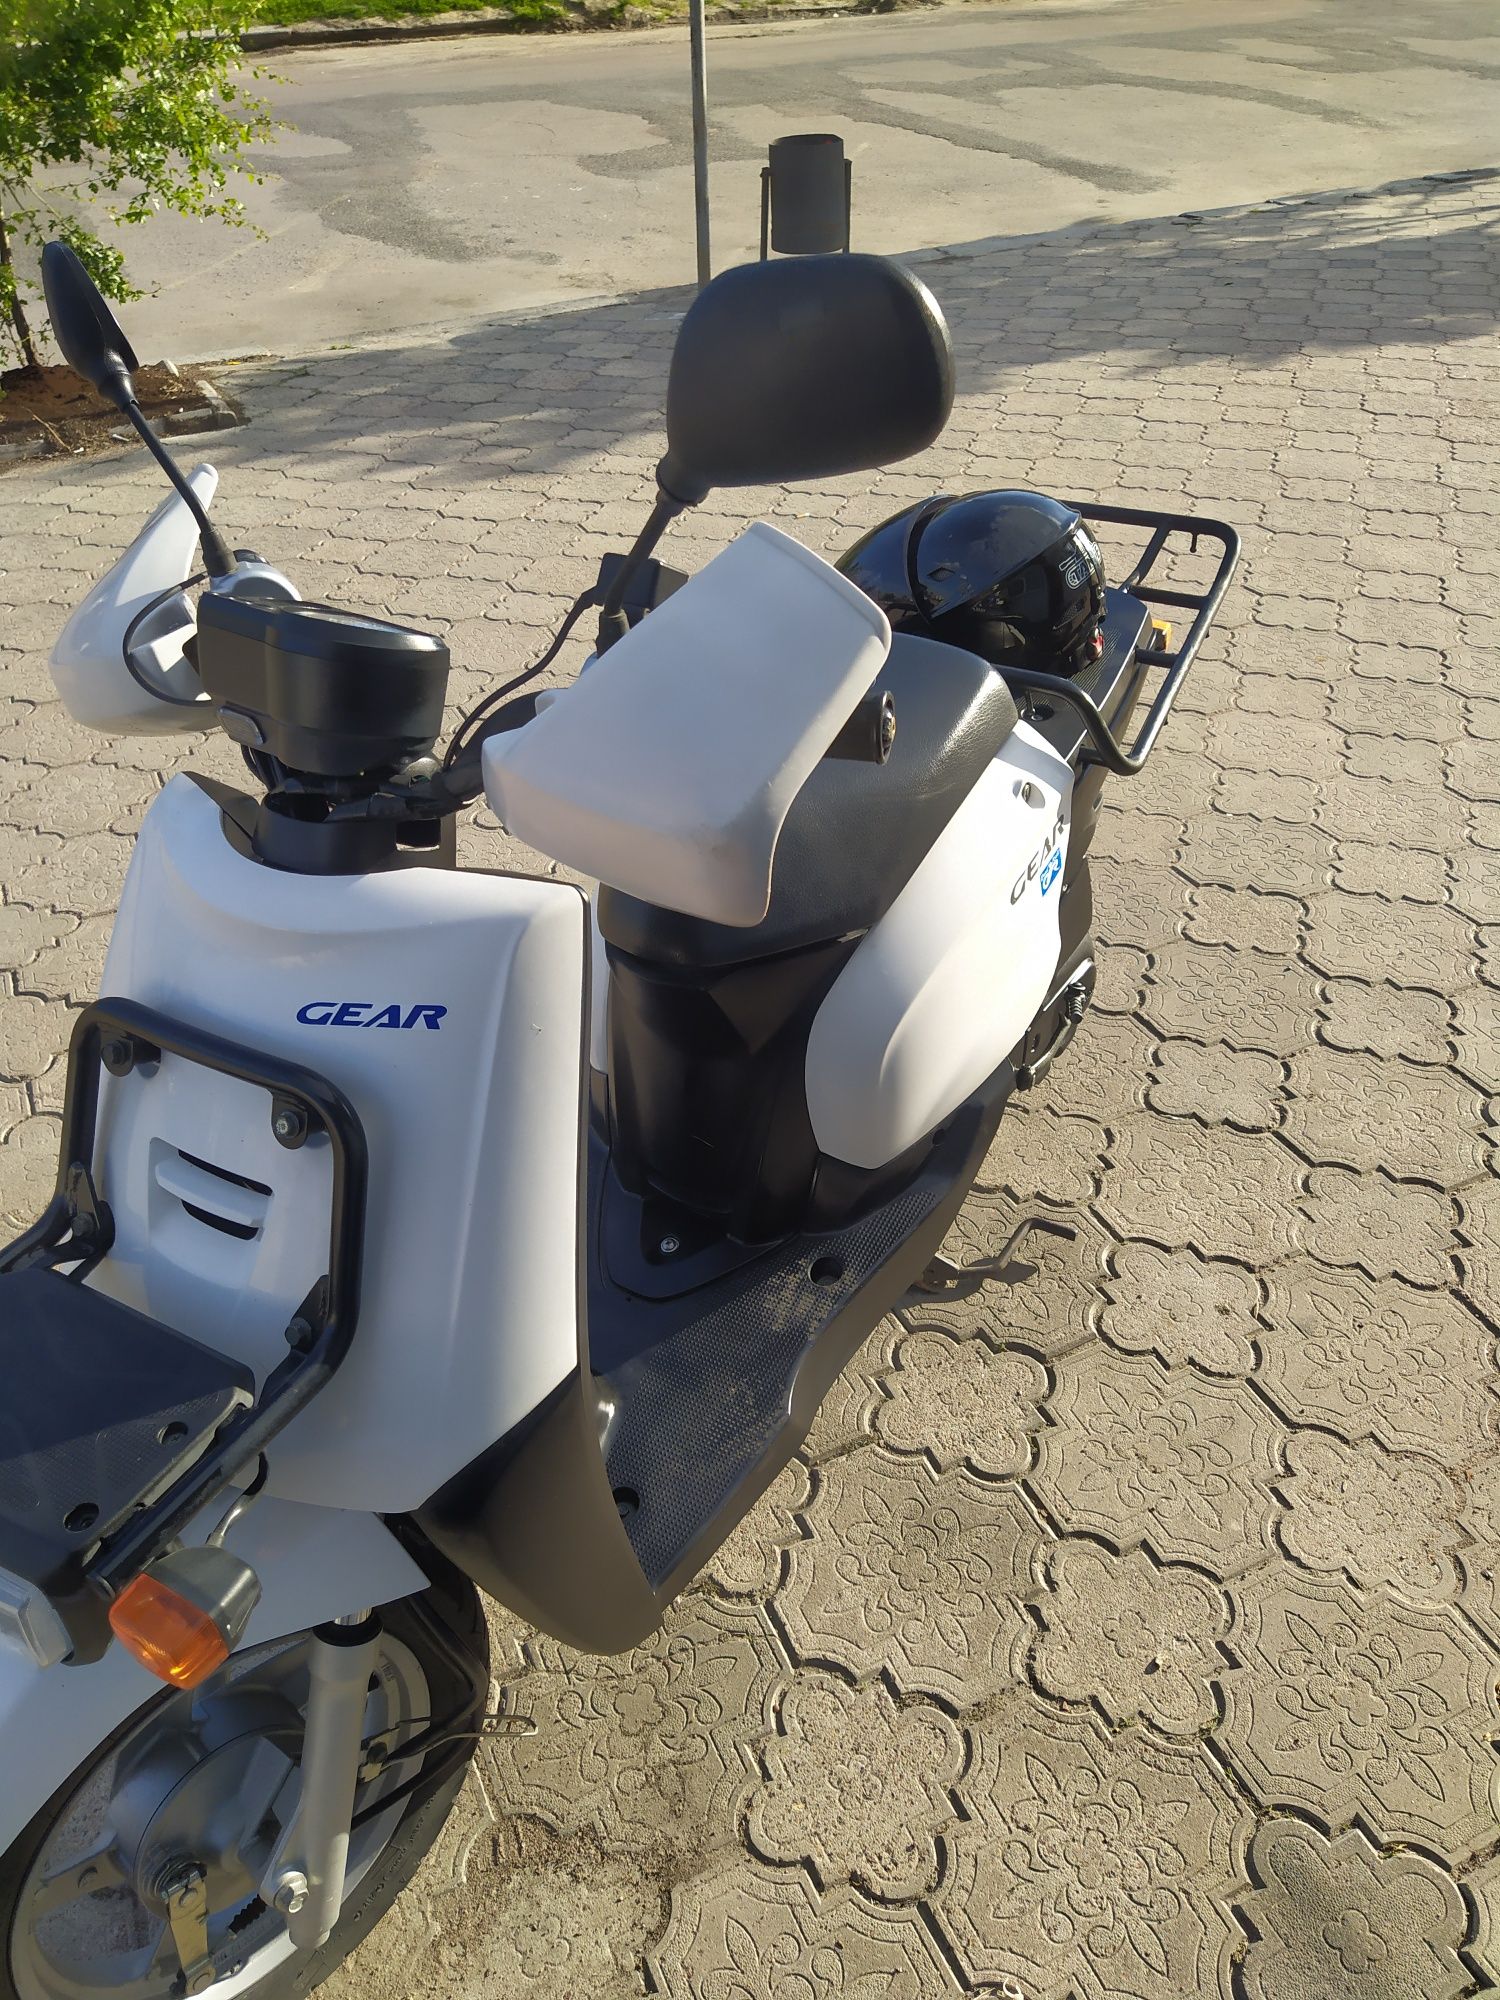 Скутер Yamaha Gear 4t Без пробігу по Україні.На реєстрації!!!